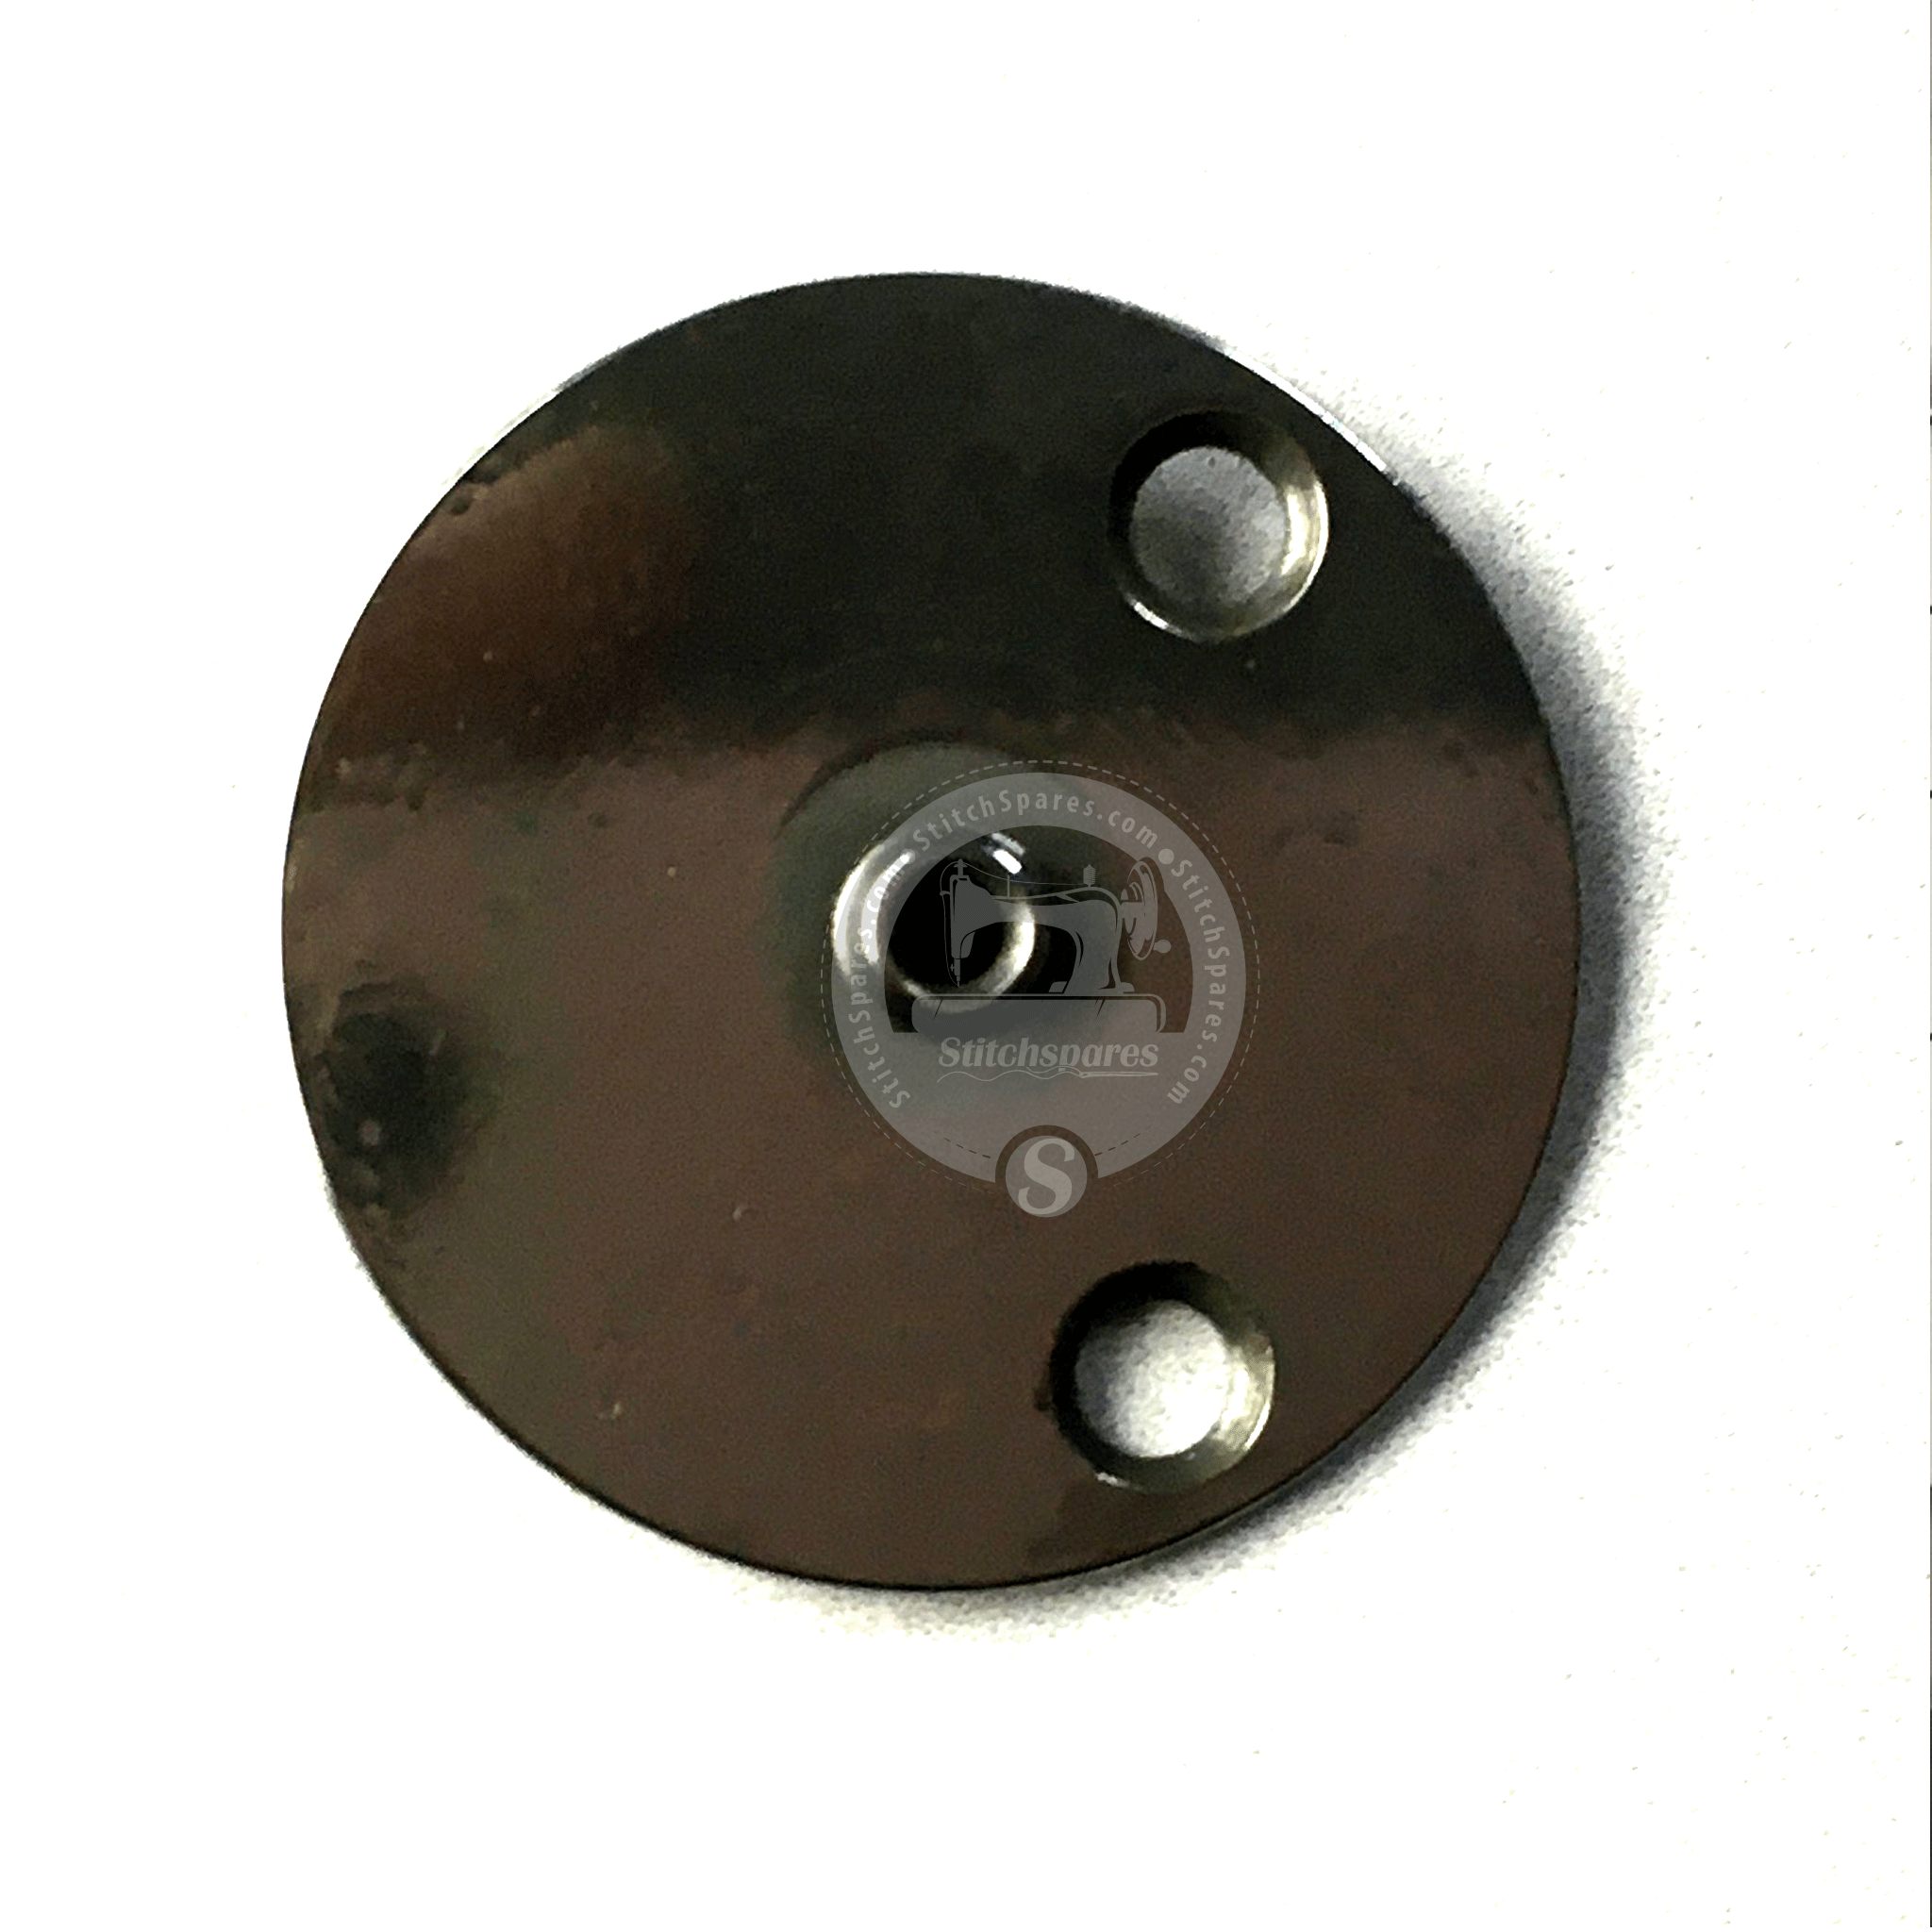 MVZ15601000 # 1.8 MM guía de orificio de placa de aguja Juki Lk-1900 pieza de repuesto para máquina de coser